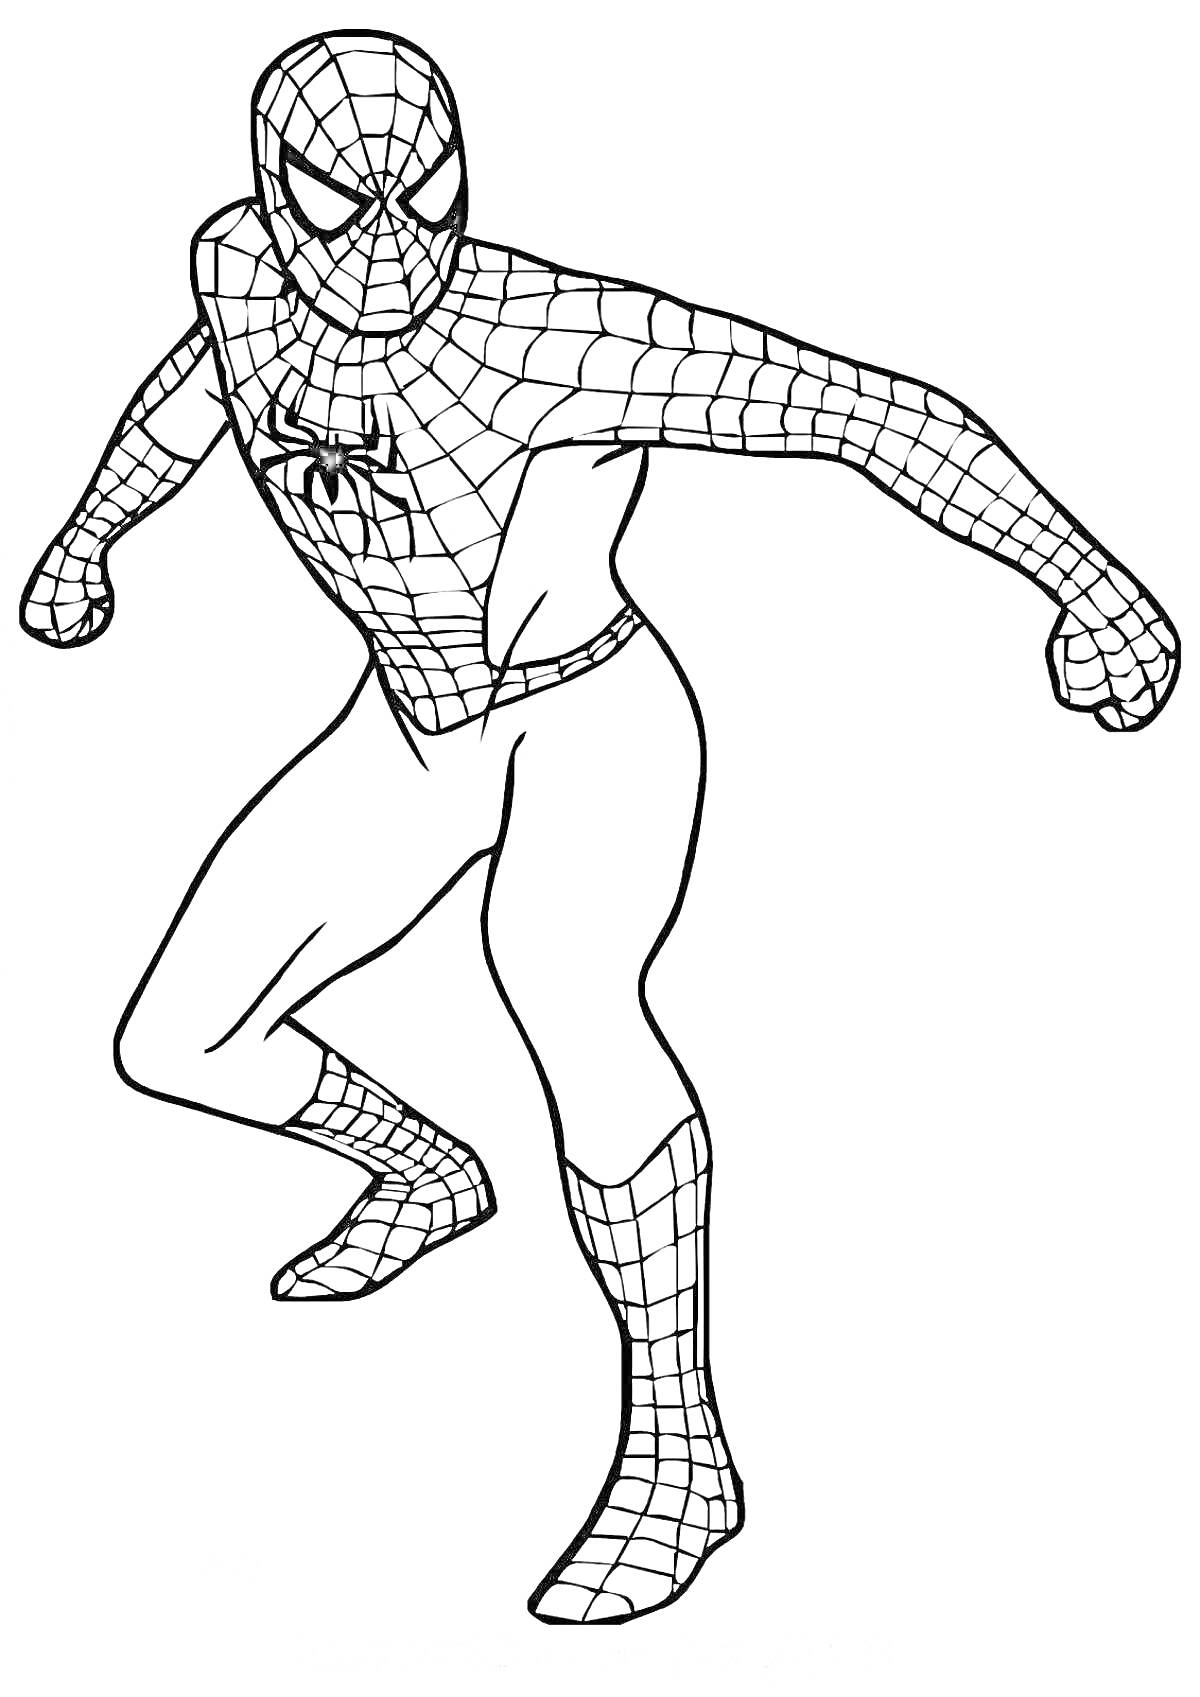 Раскраска супергерой в полный рост в костюме с паутиной и пауком на груди в боевой позе